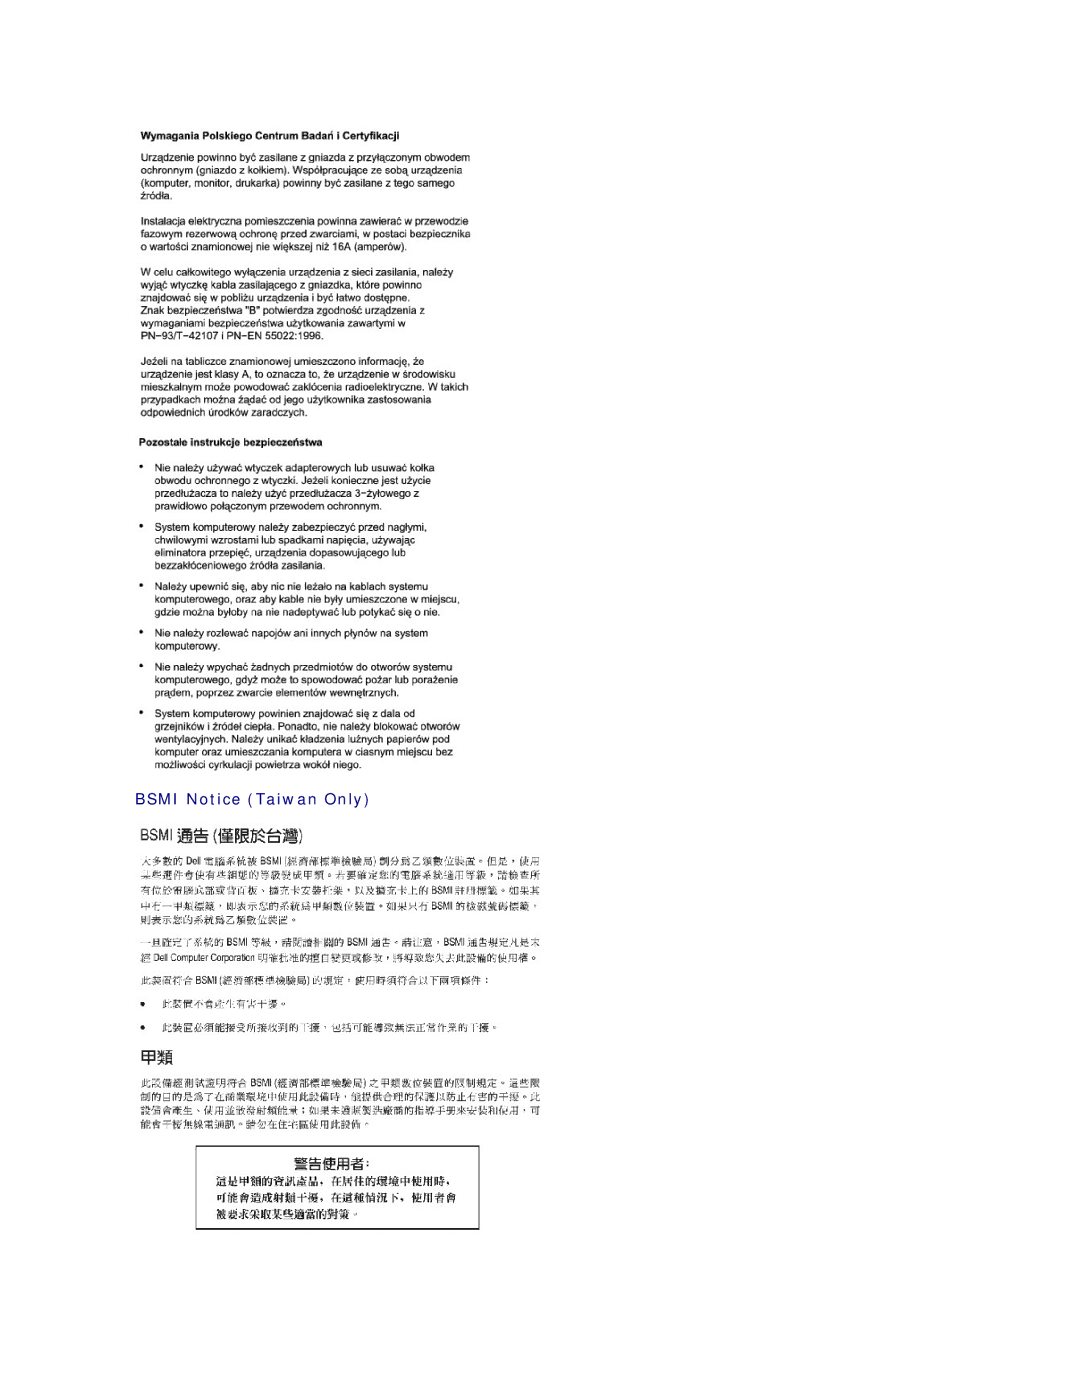 Dell 450 warranty Bsmi Notice Taiwan Only 